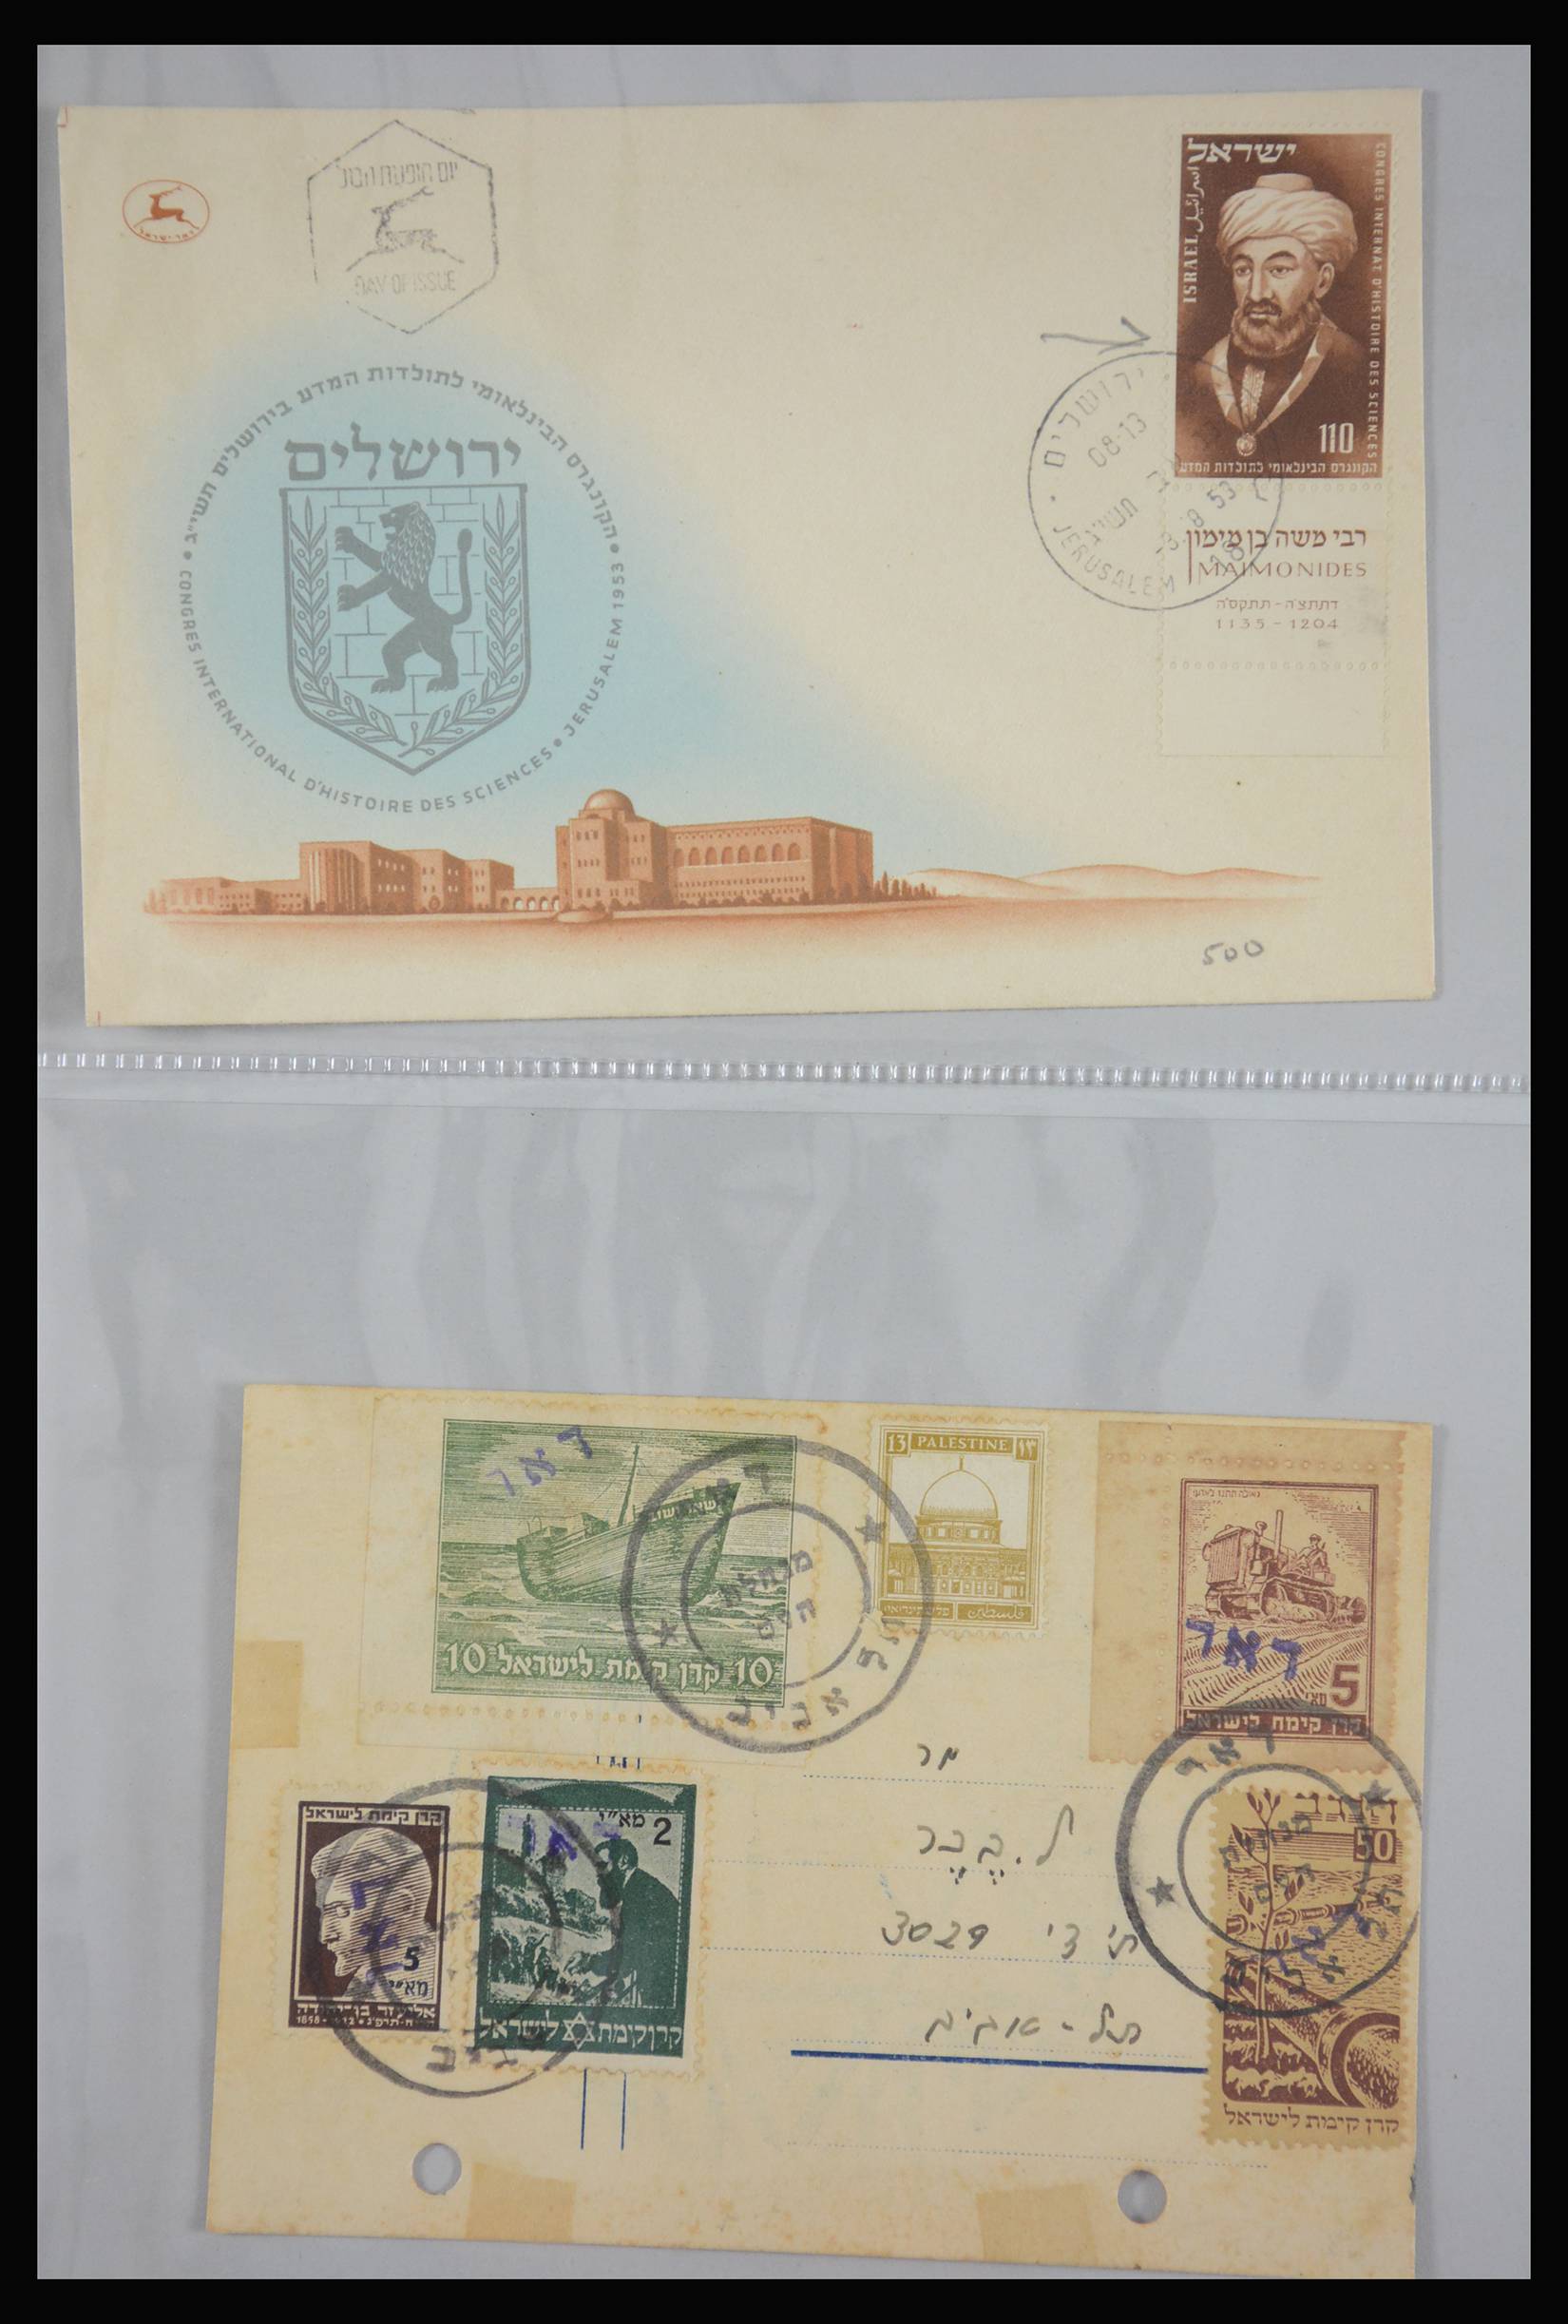 27822 008 - 27822 Israël brieven.